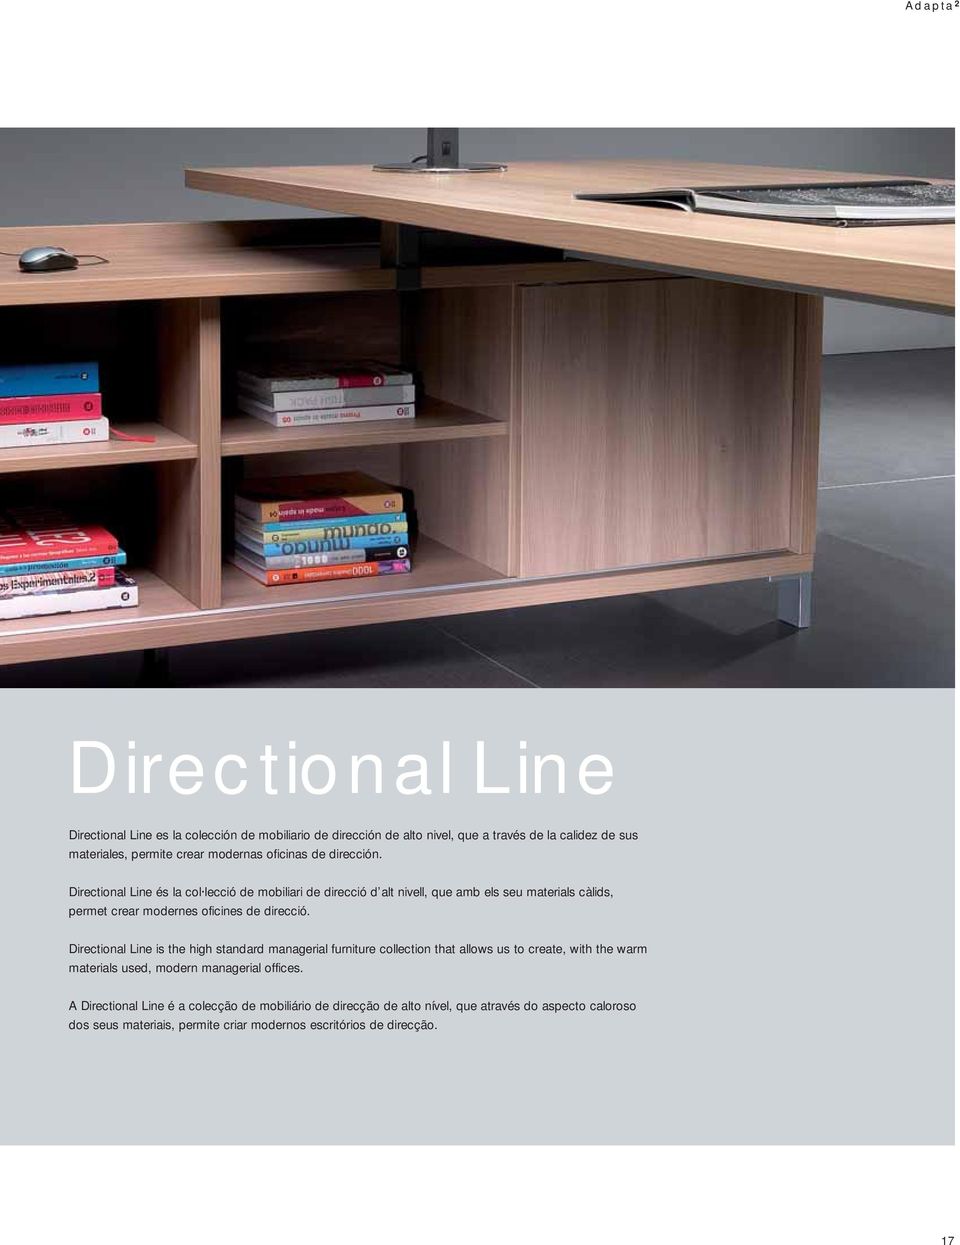 Directional Line és la col lecció de mobiliari de direcció d alt nivell, que amb els seu materials càlids, permet crear modernes oficines de direcció.